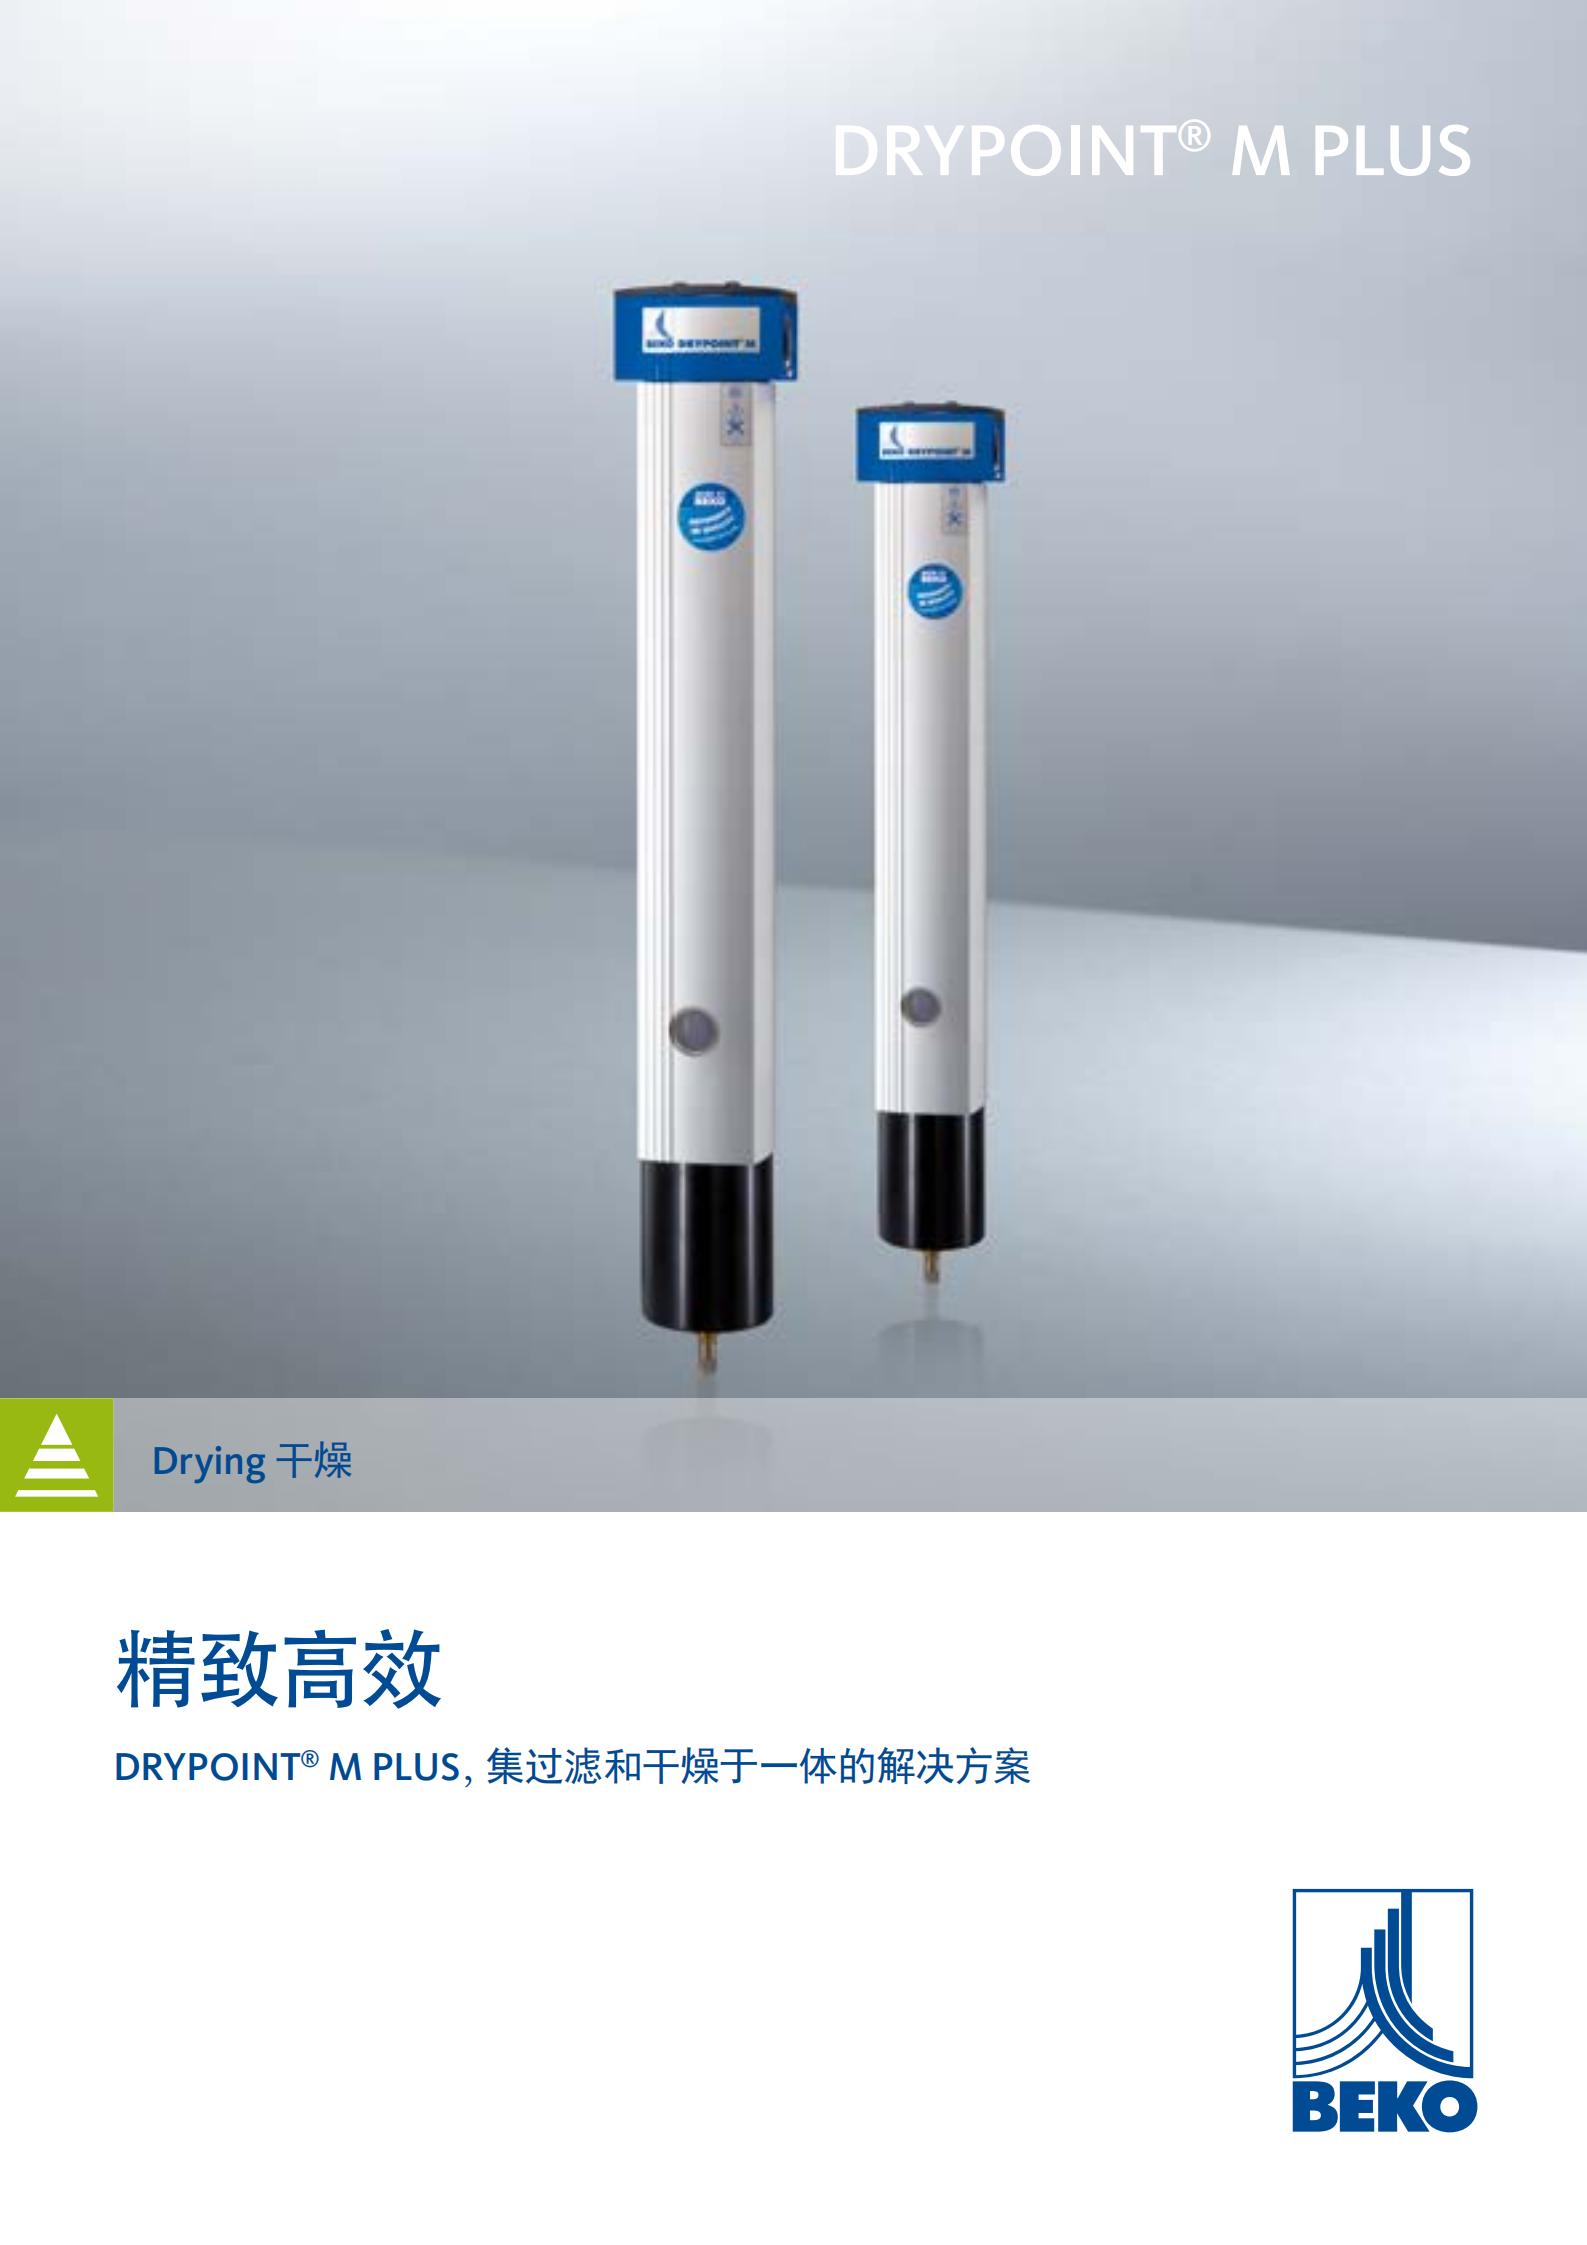 上海市锂电用膜式干燥器DM08G23R厂家供应德国BEKO锂电用膜式干燥器DM08G23RA系列进口